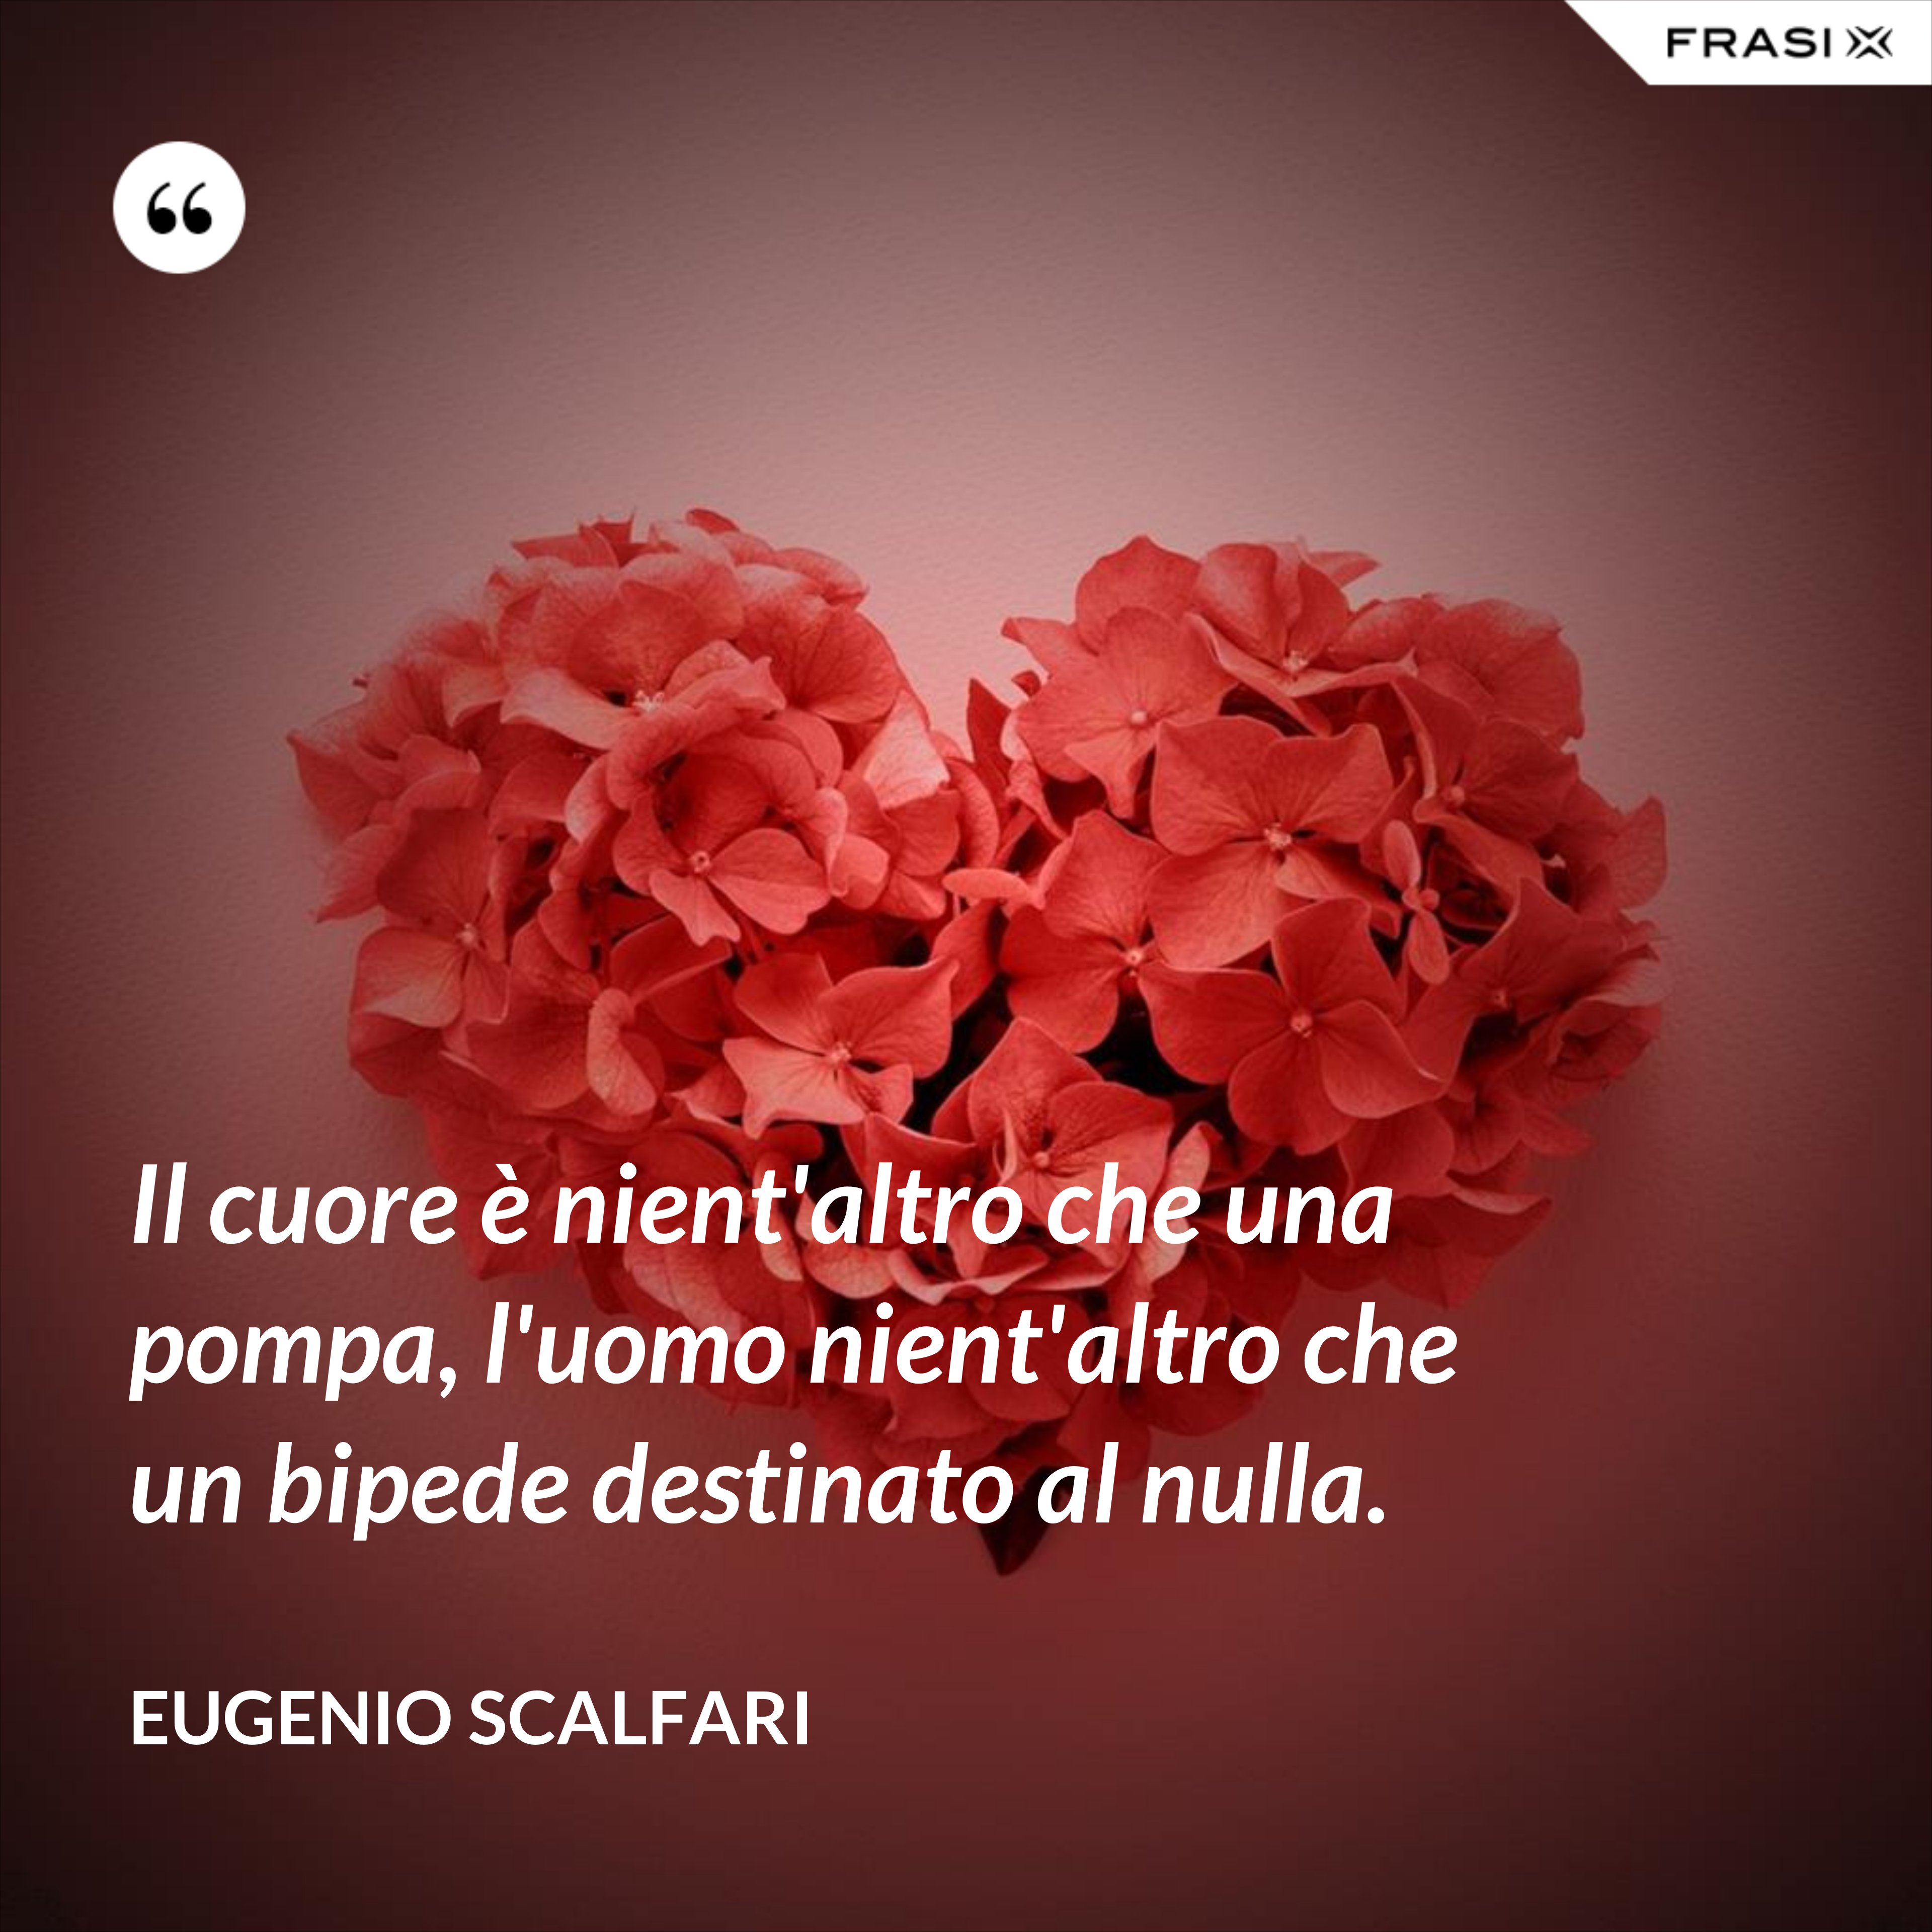 Il cuore è nient'altro che una pompa, l'uomo nient'altro che un bipede destinato al nulla. - Eugenio Scalfari